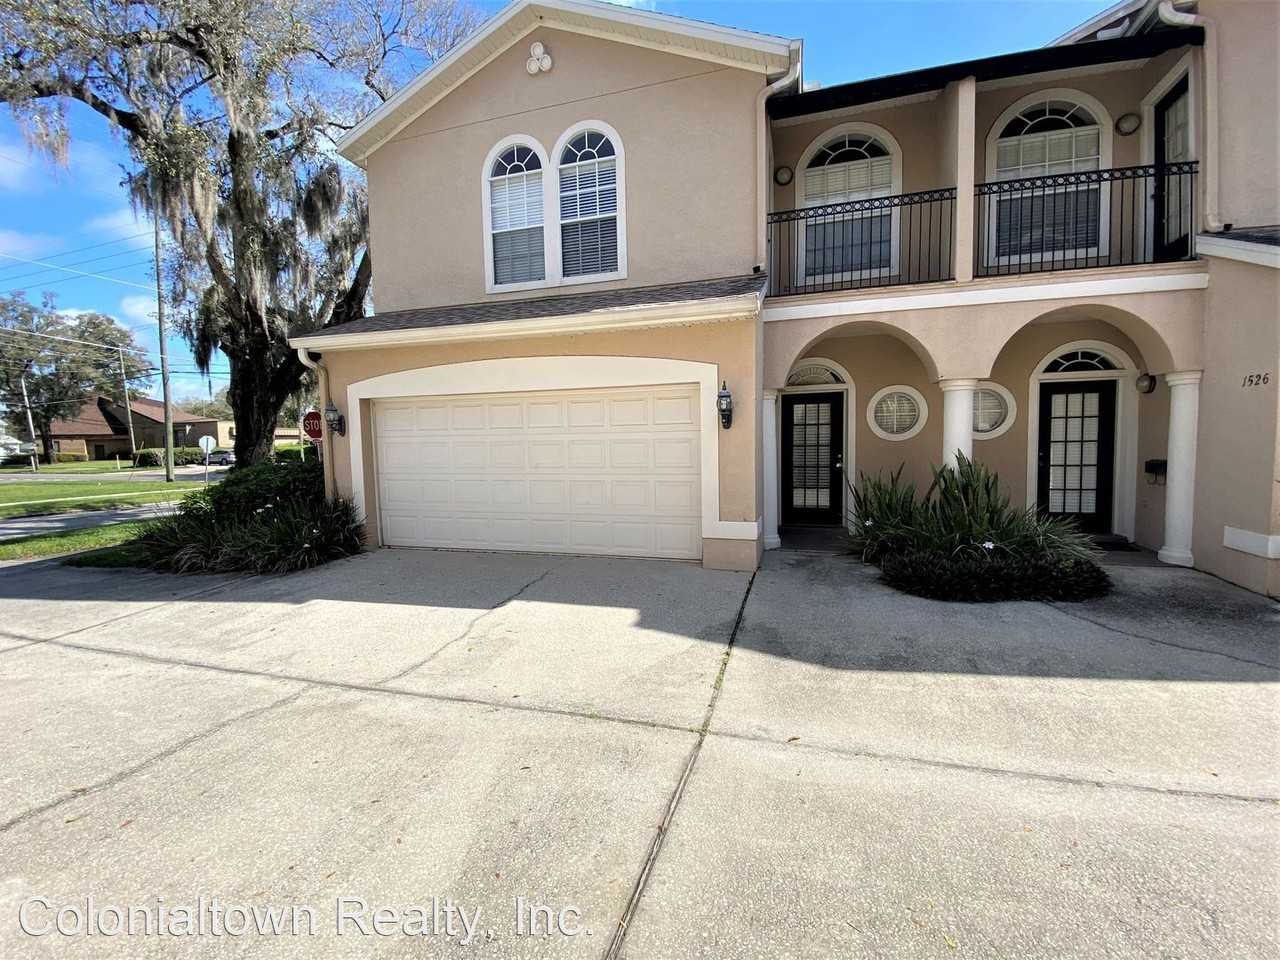 200 E Marks St, Orlando, FL 200 20 Bedroom House for Rent for ...